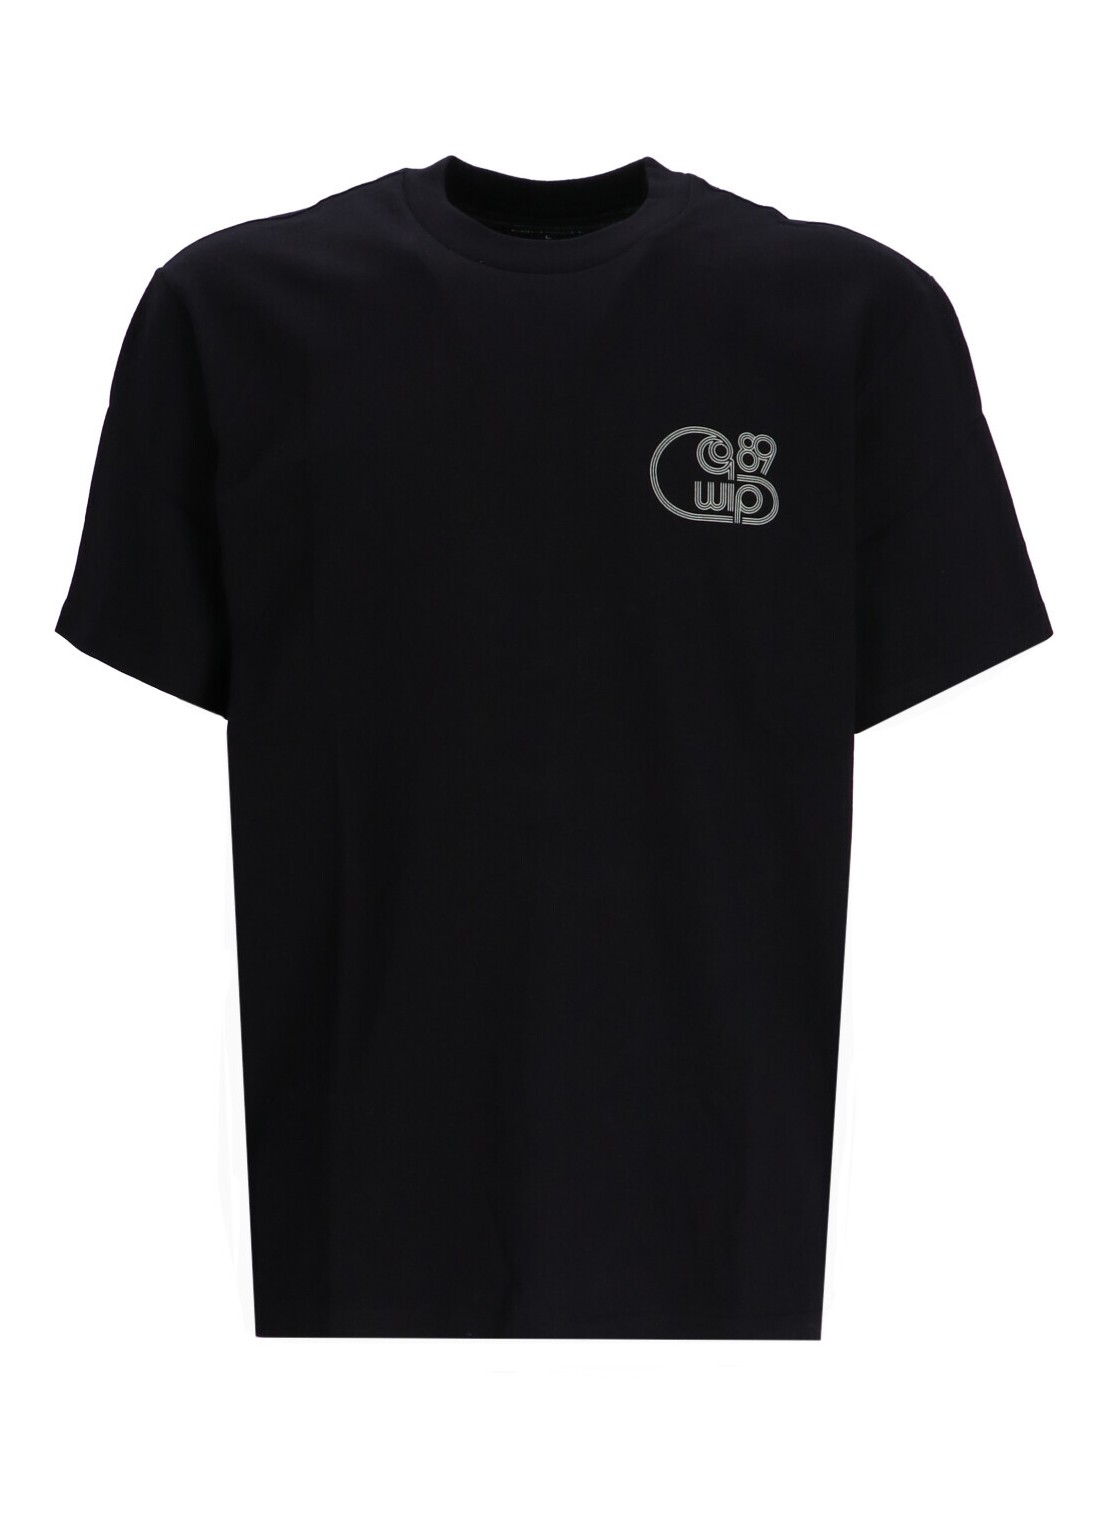 Camiseta carhartt t-shirt man s/s night night t-shirt i033172 1xdxx talla XL
 